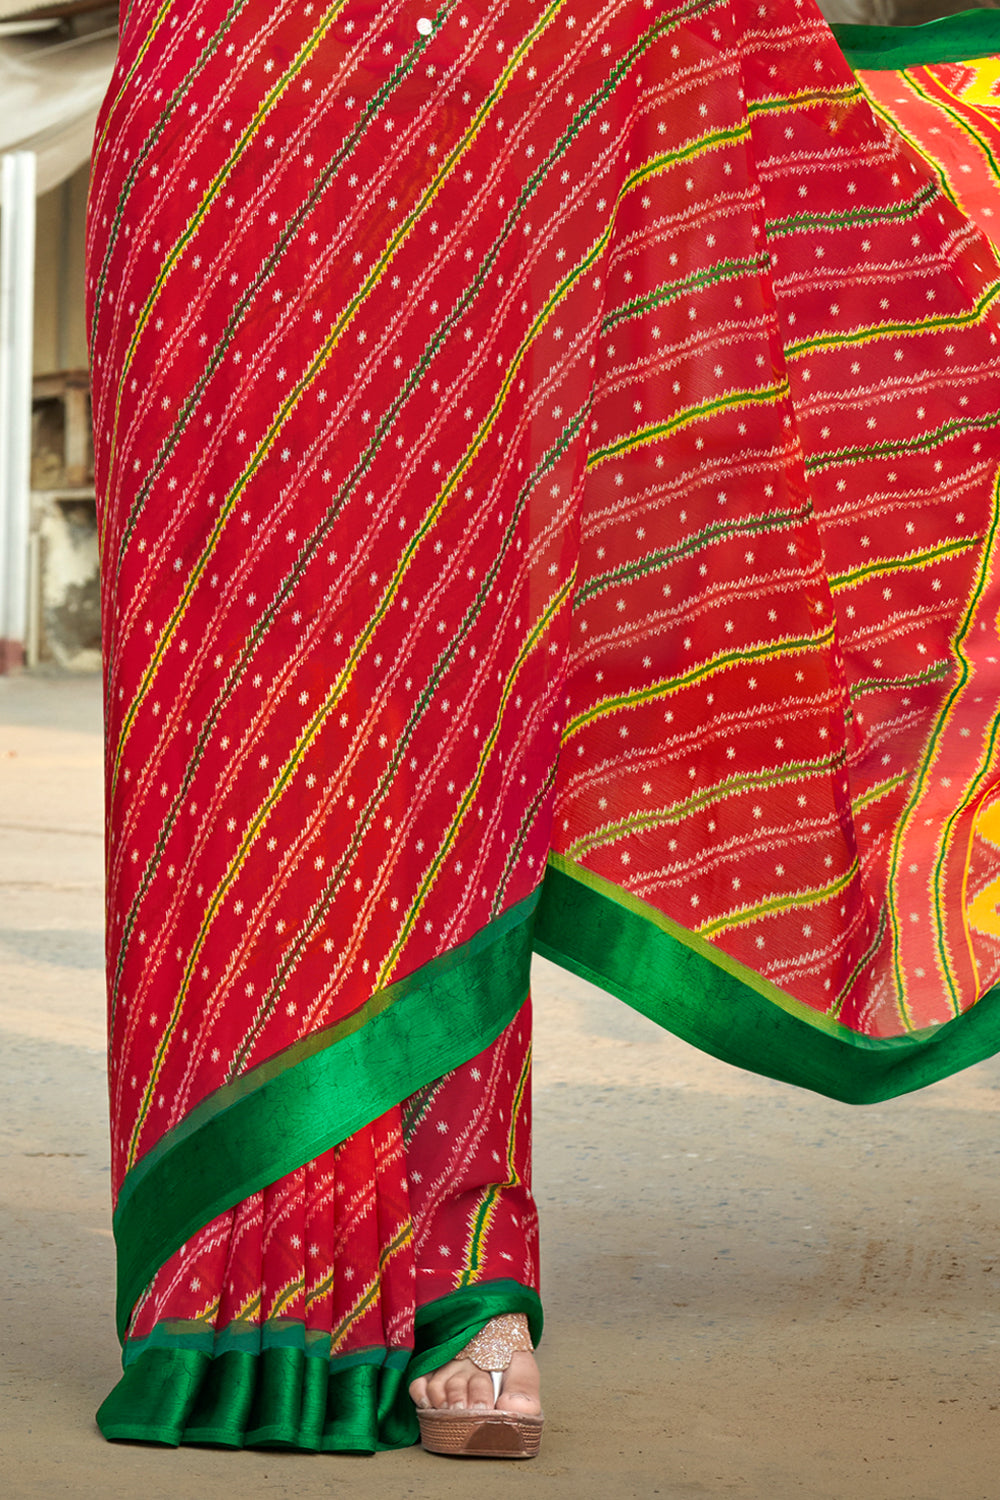 Buy PK HUB Rajasthani Womens Chiffon Fabric Leheriya Saree Traditional  Ethnic Sari Jaipuri Fashion Dress (Green) at Amazon.in